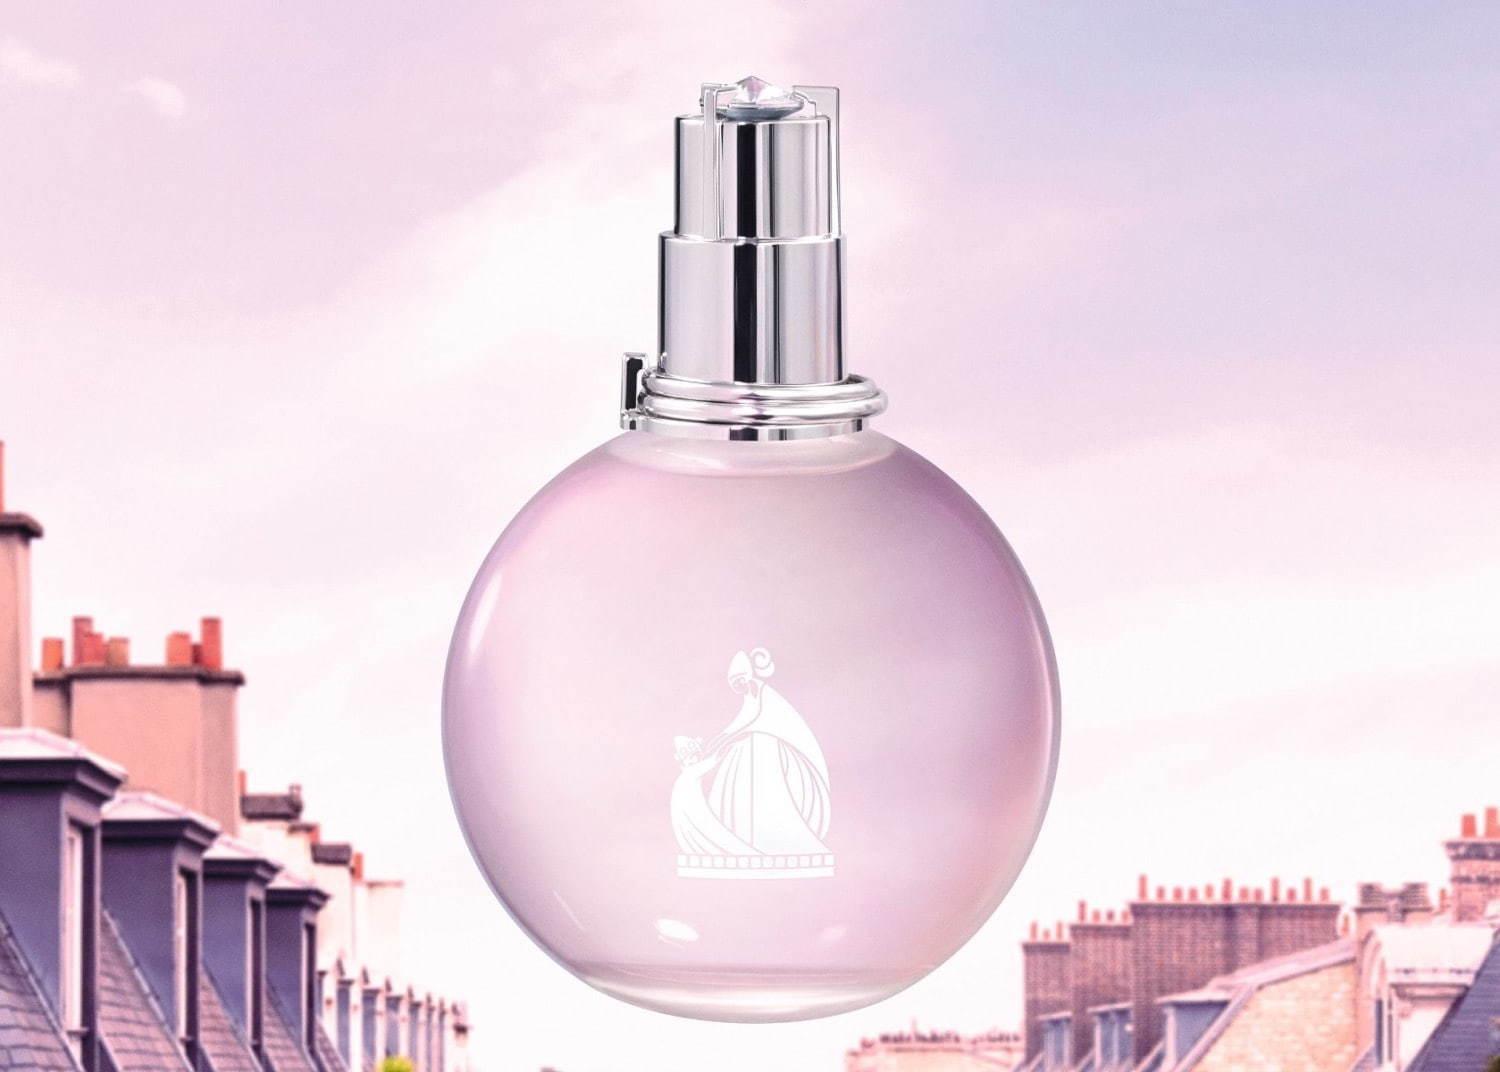 ランバンの香水「エクラ・ドゥ・アルページュ」新作、ピンクサテンドレスイメージのボトル コピー